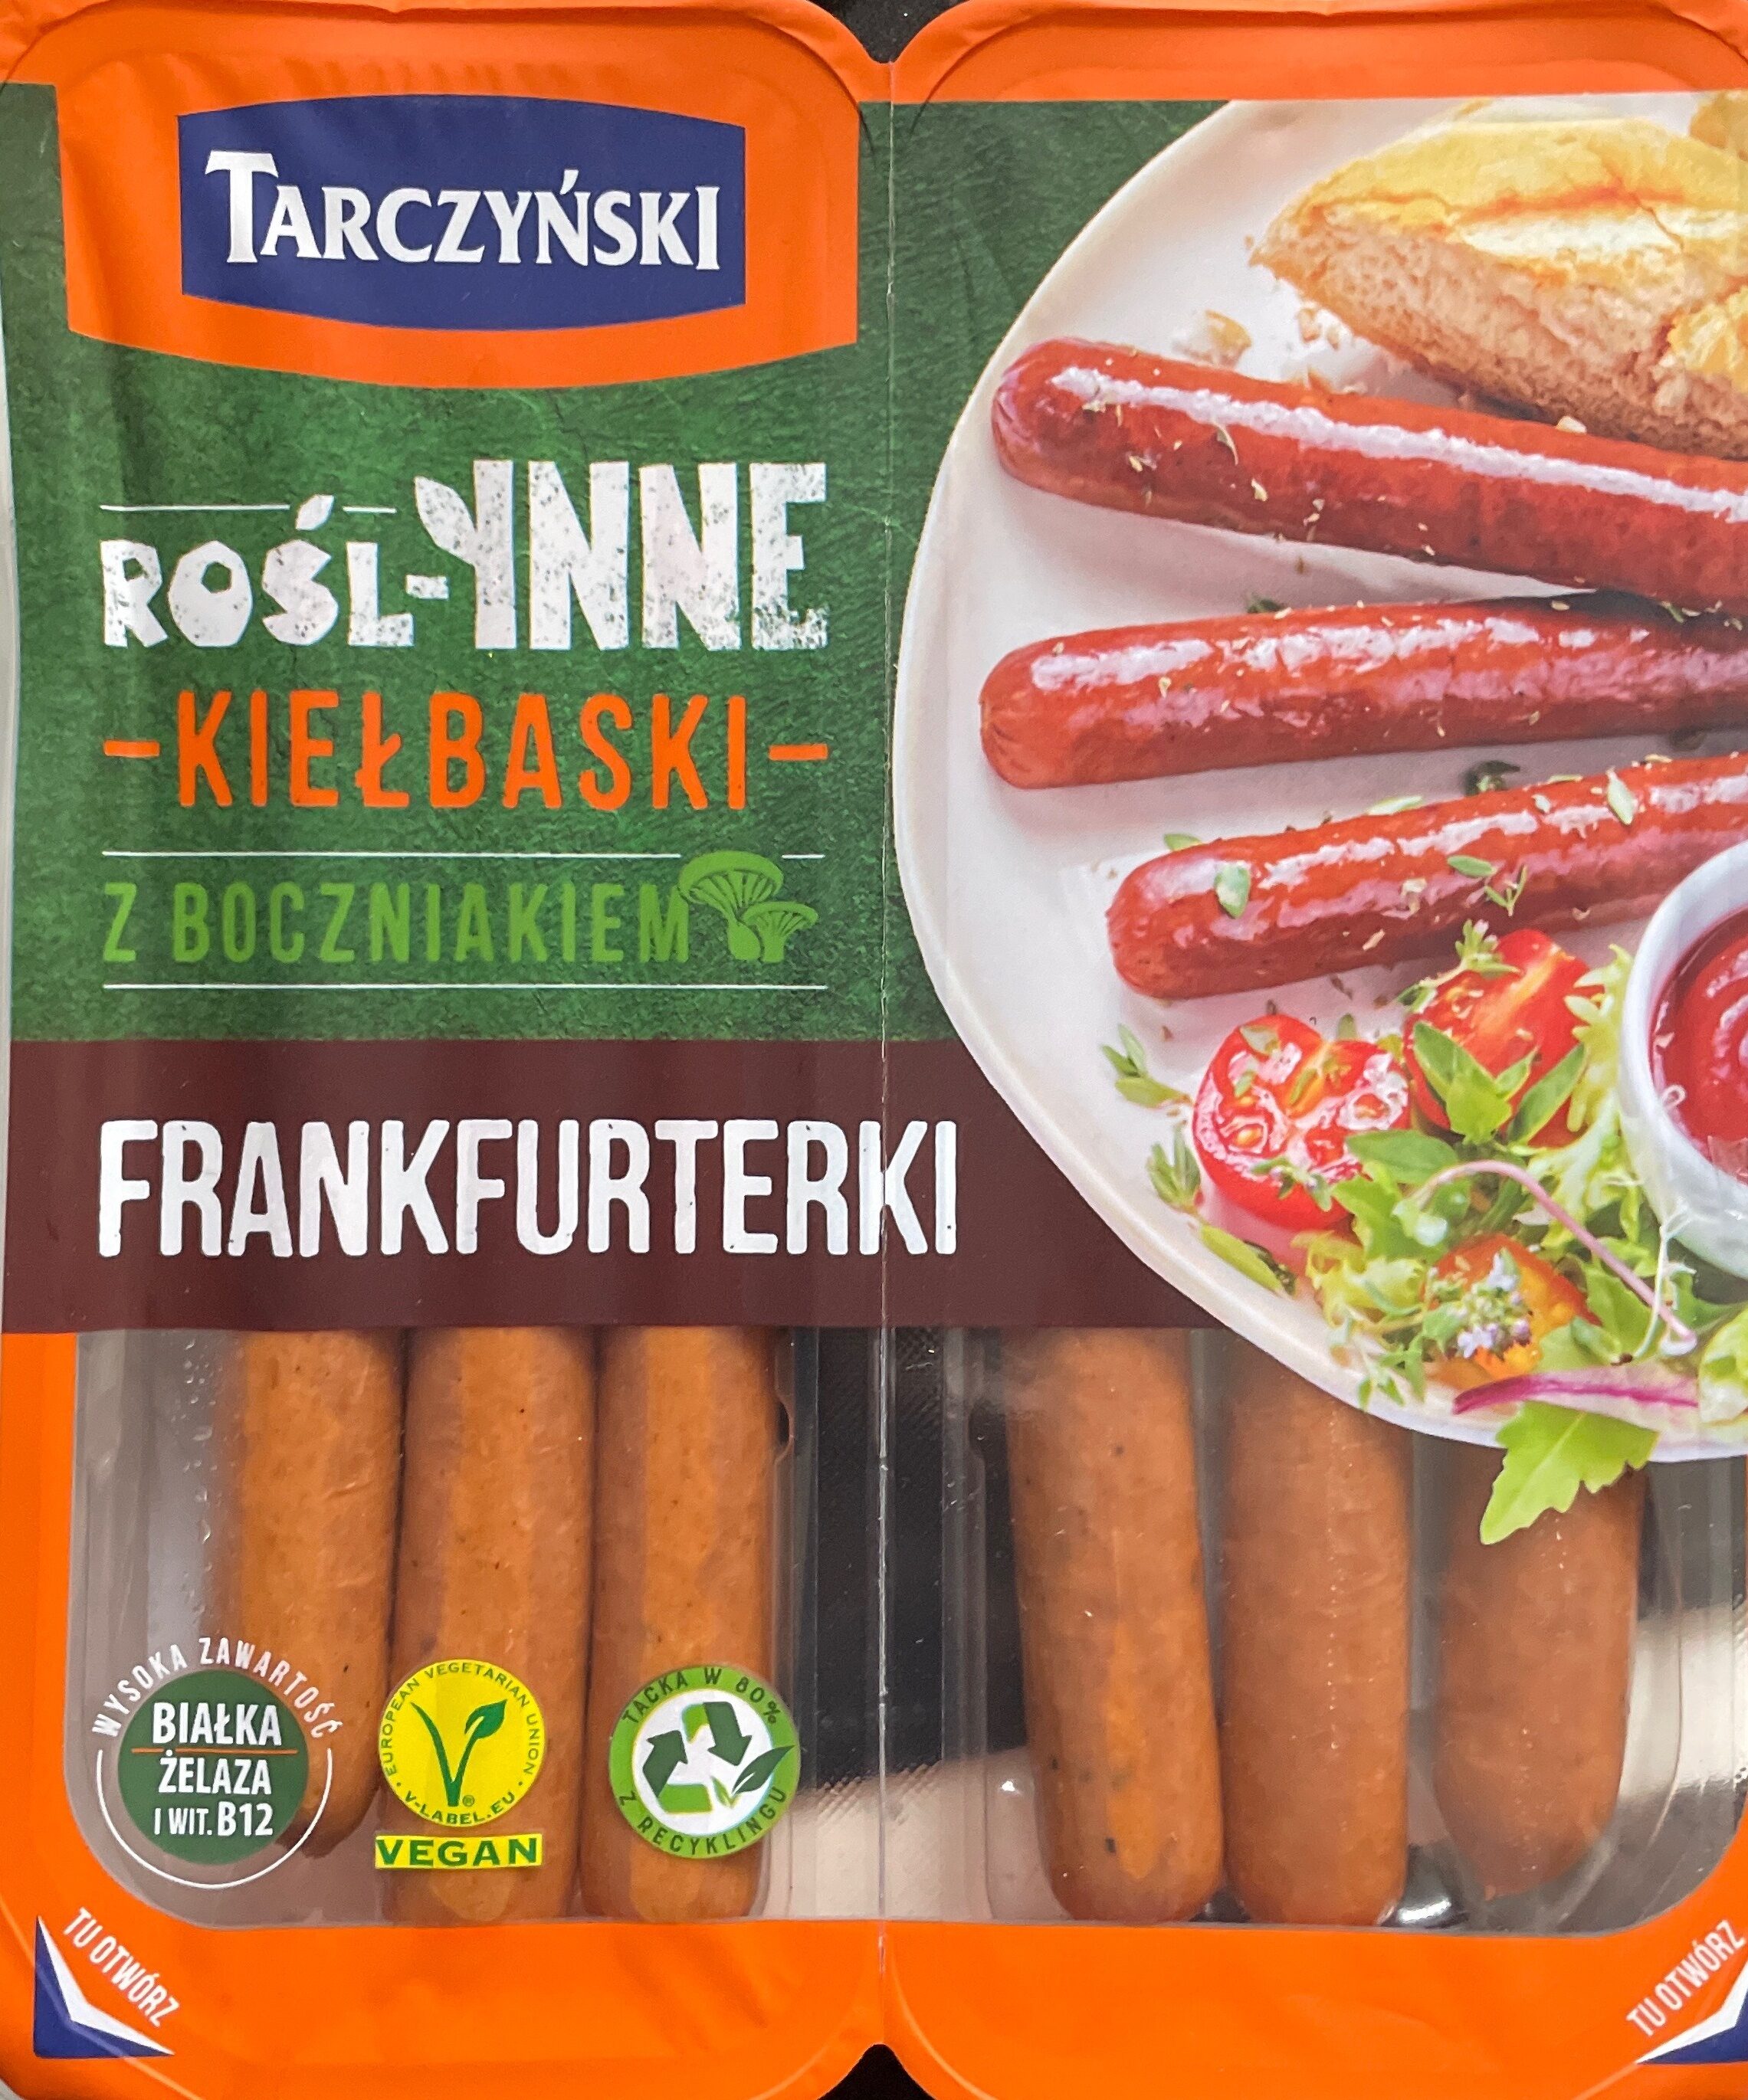 Rośl-inne Kiełbaski z boczniakiem - Frankfurterki - نتاج - pl